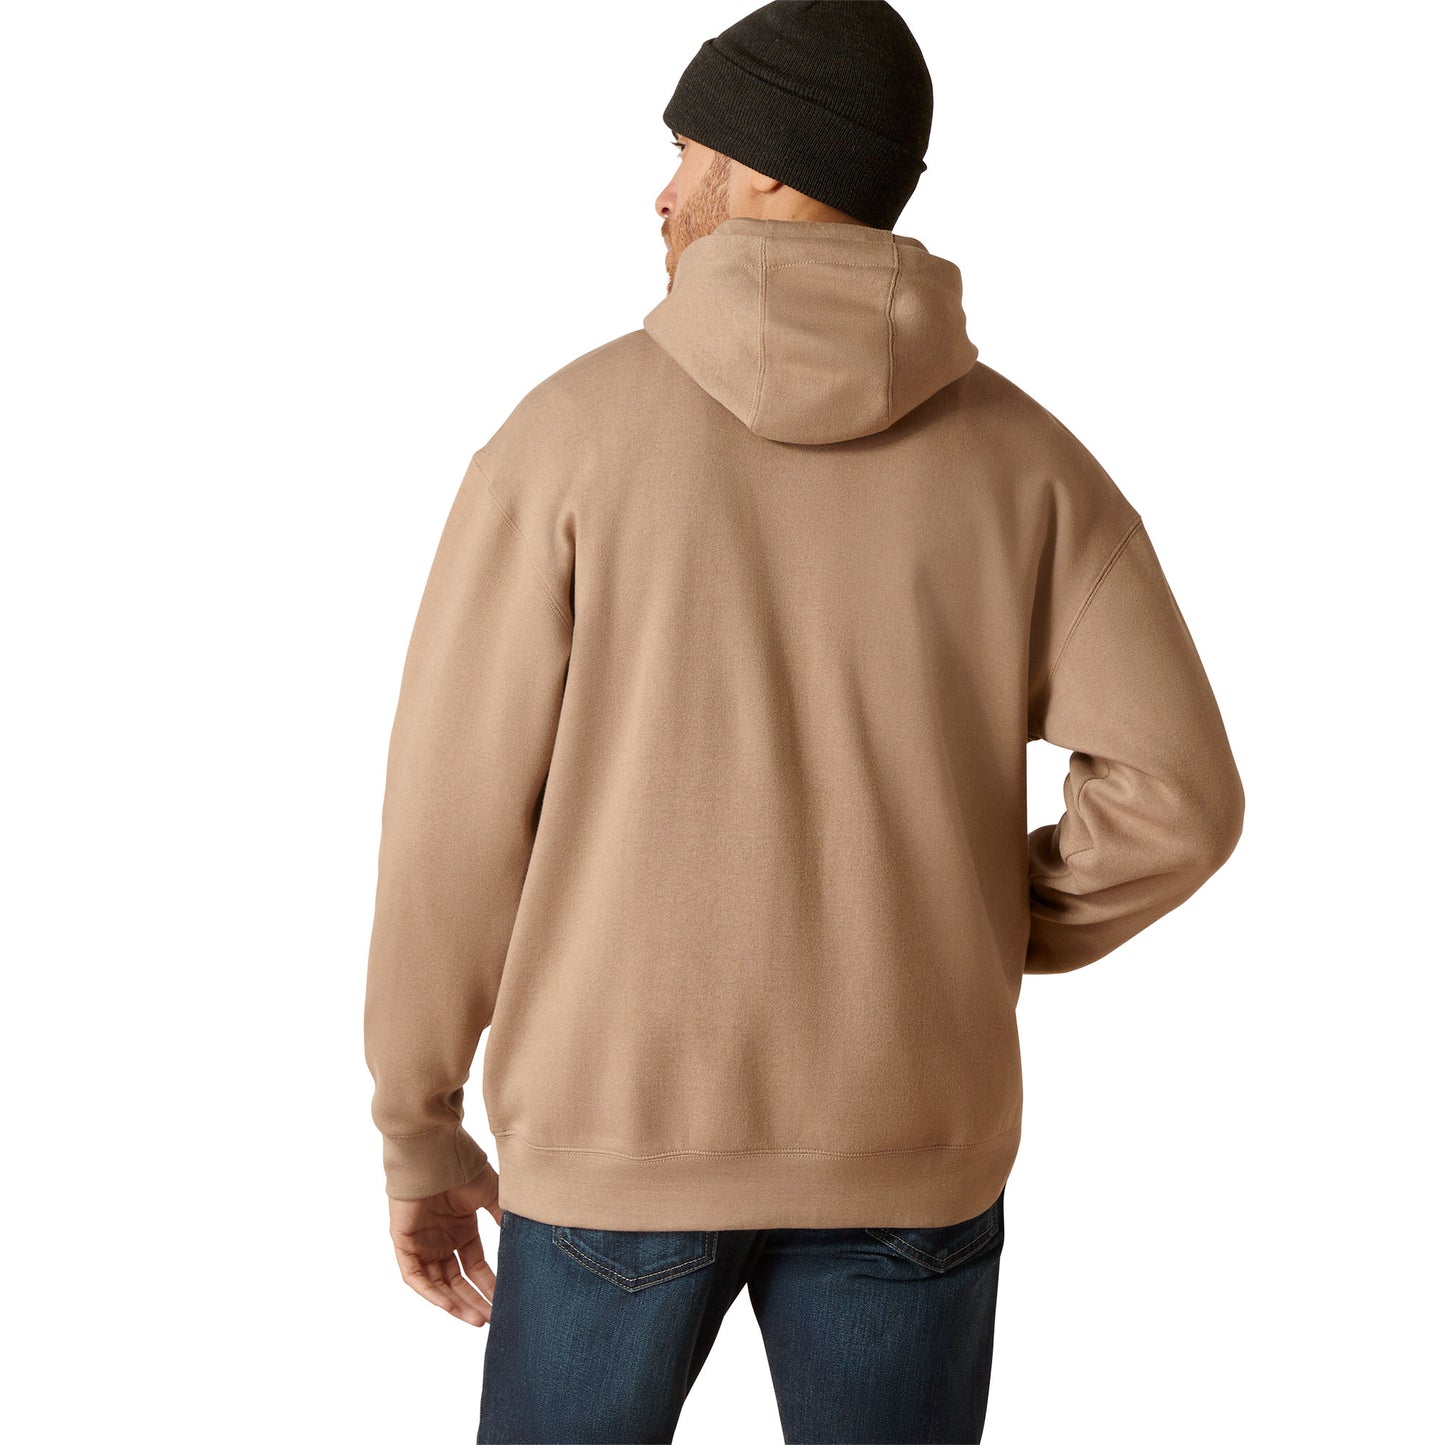 Ariat Men's Peak Desert Hooded Sweatshirt